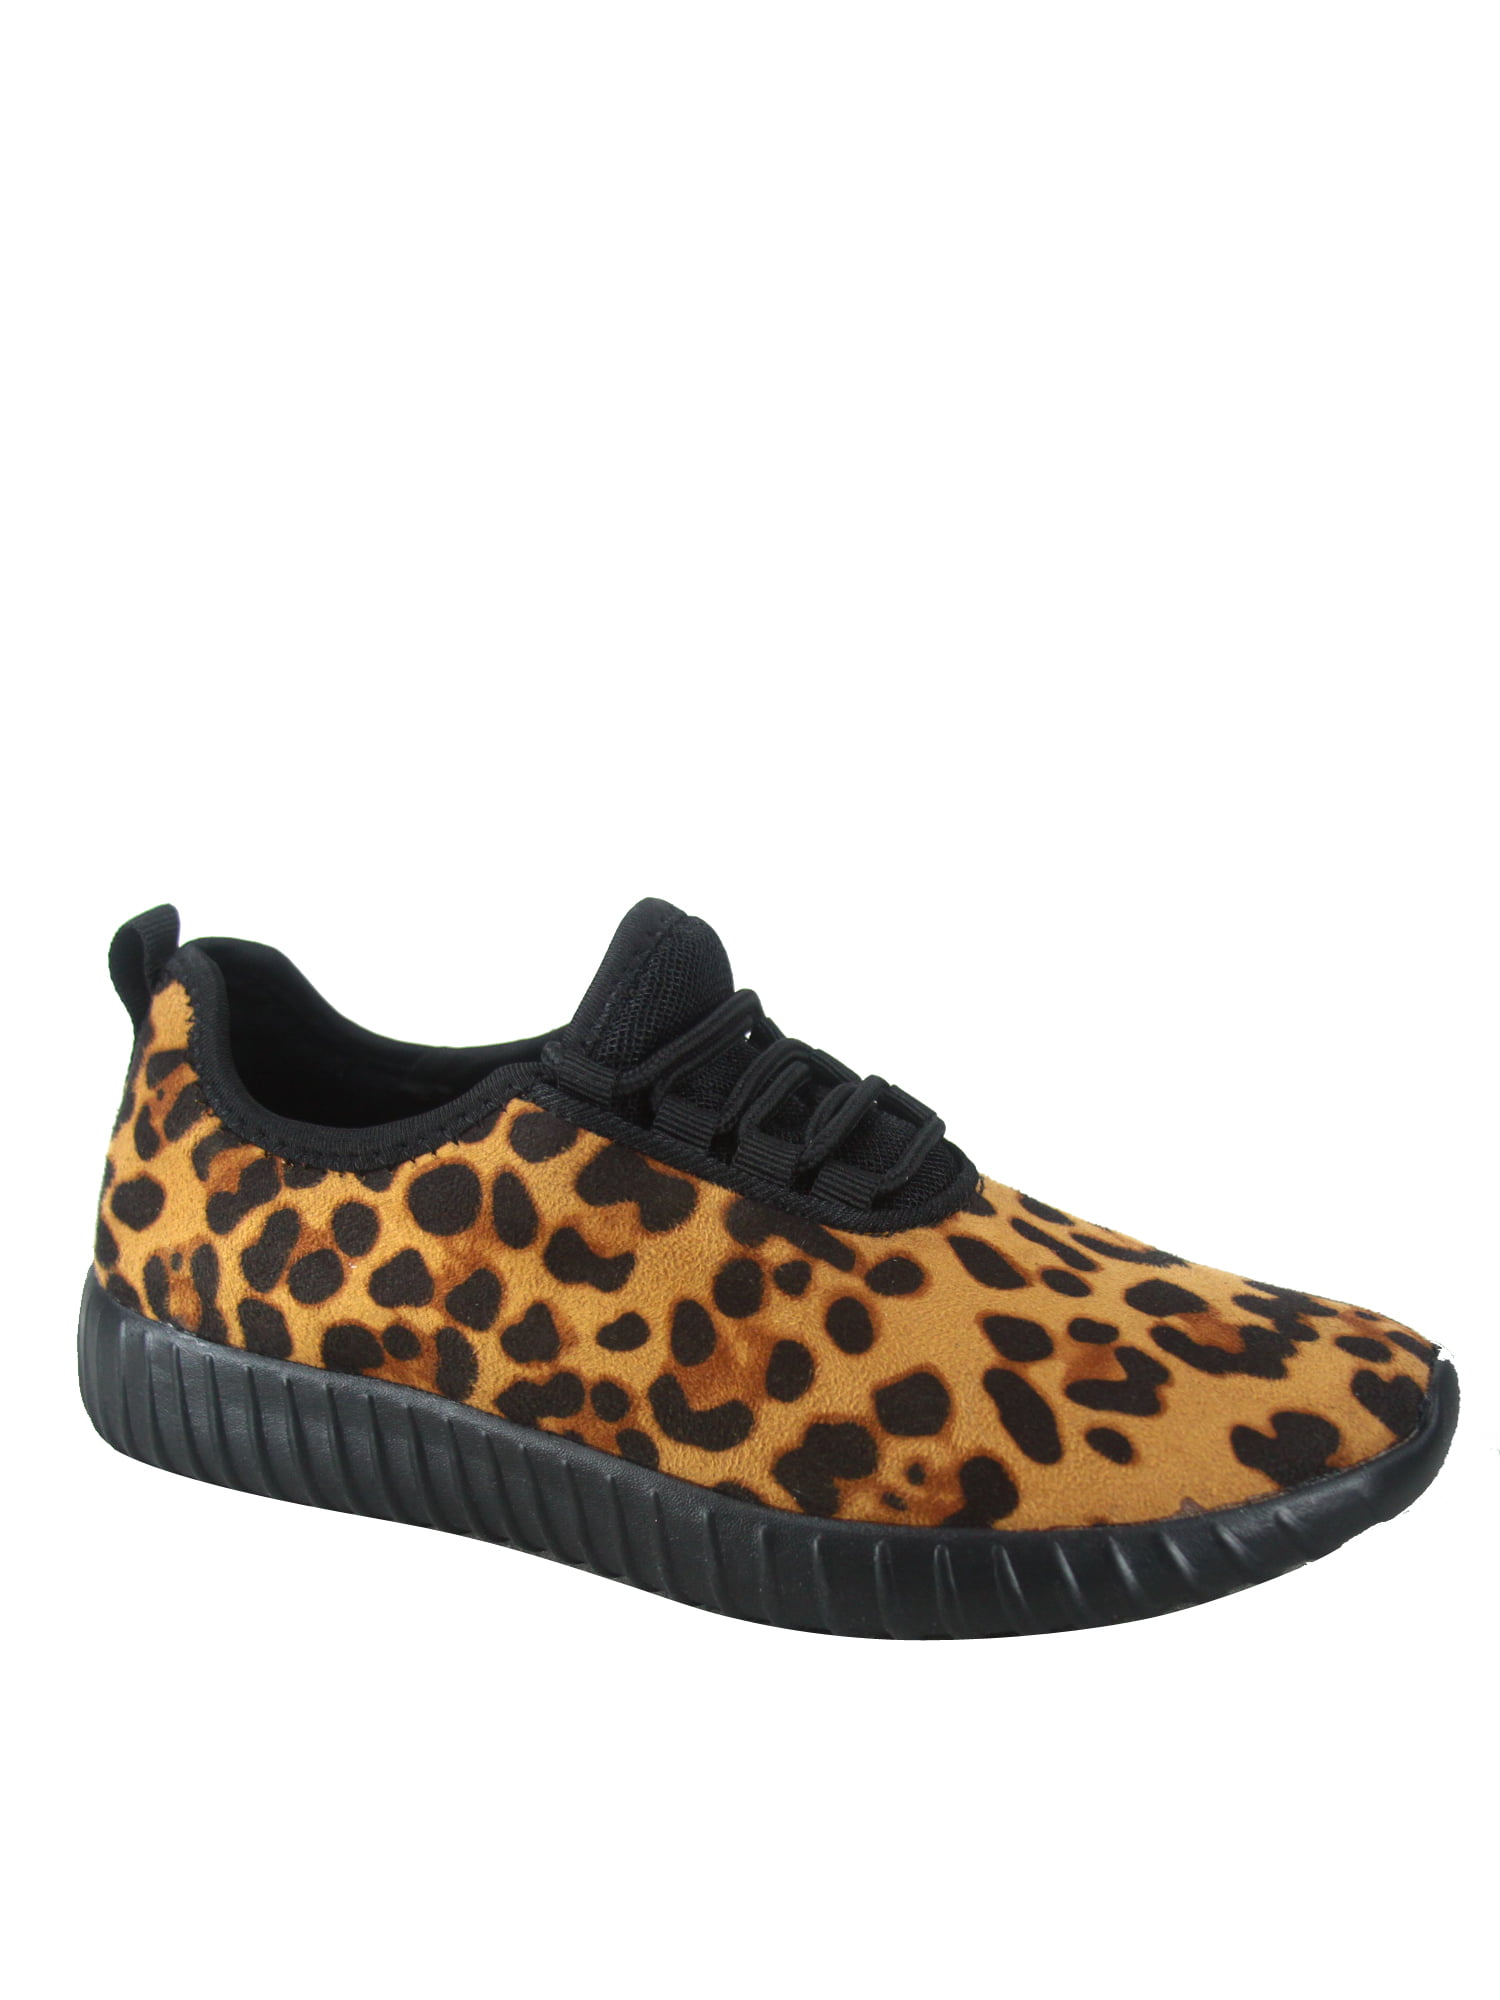 forever link leopard shoes